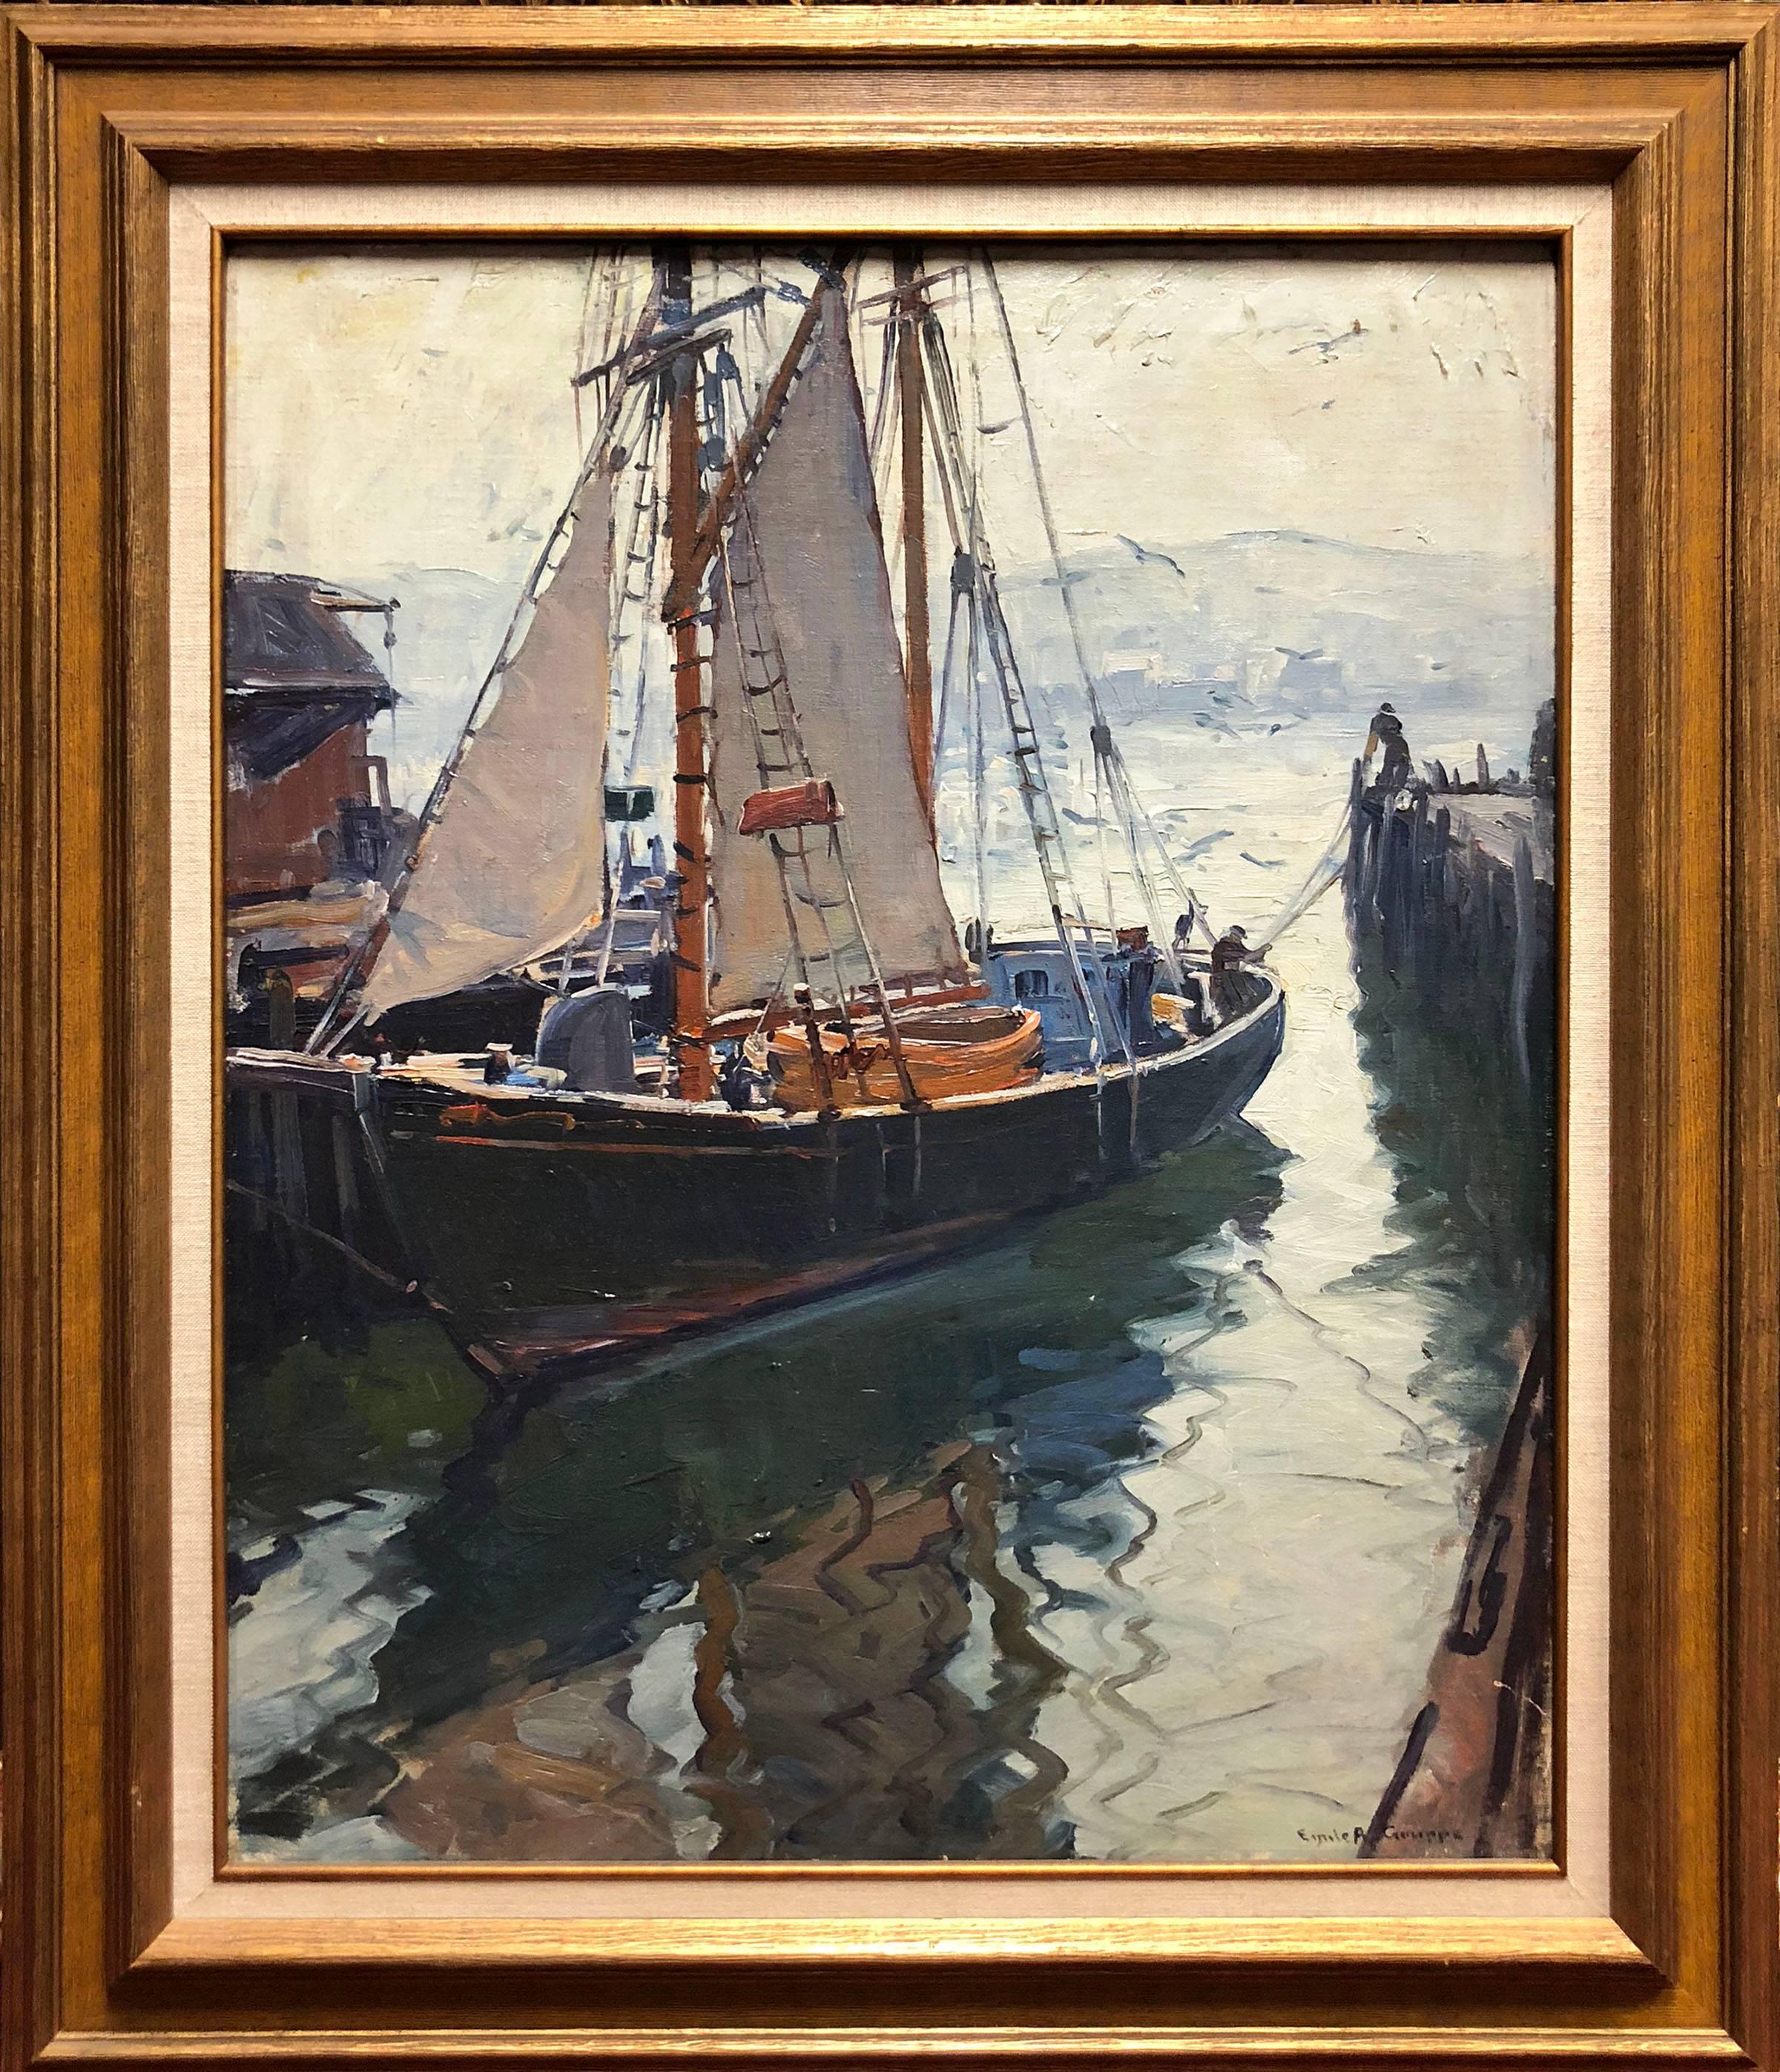 Harbor-Reflektionen – Painting von Emile Albert Gruppe